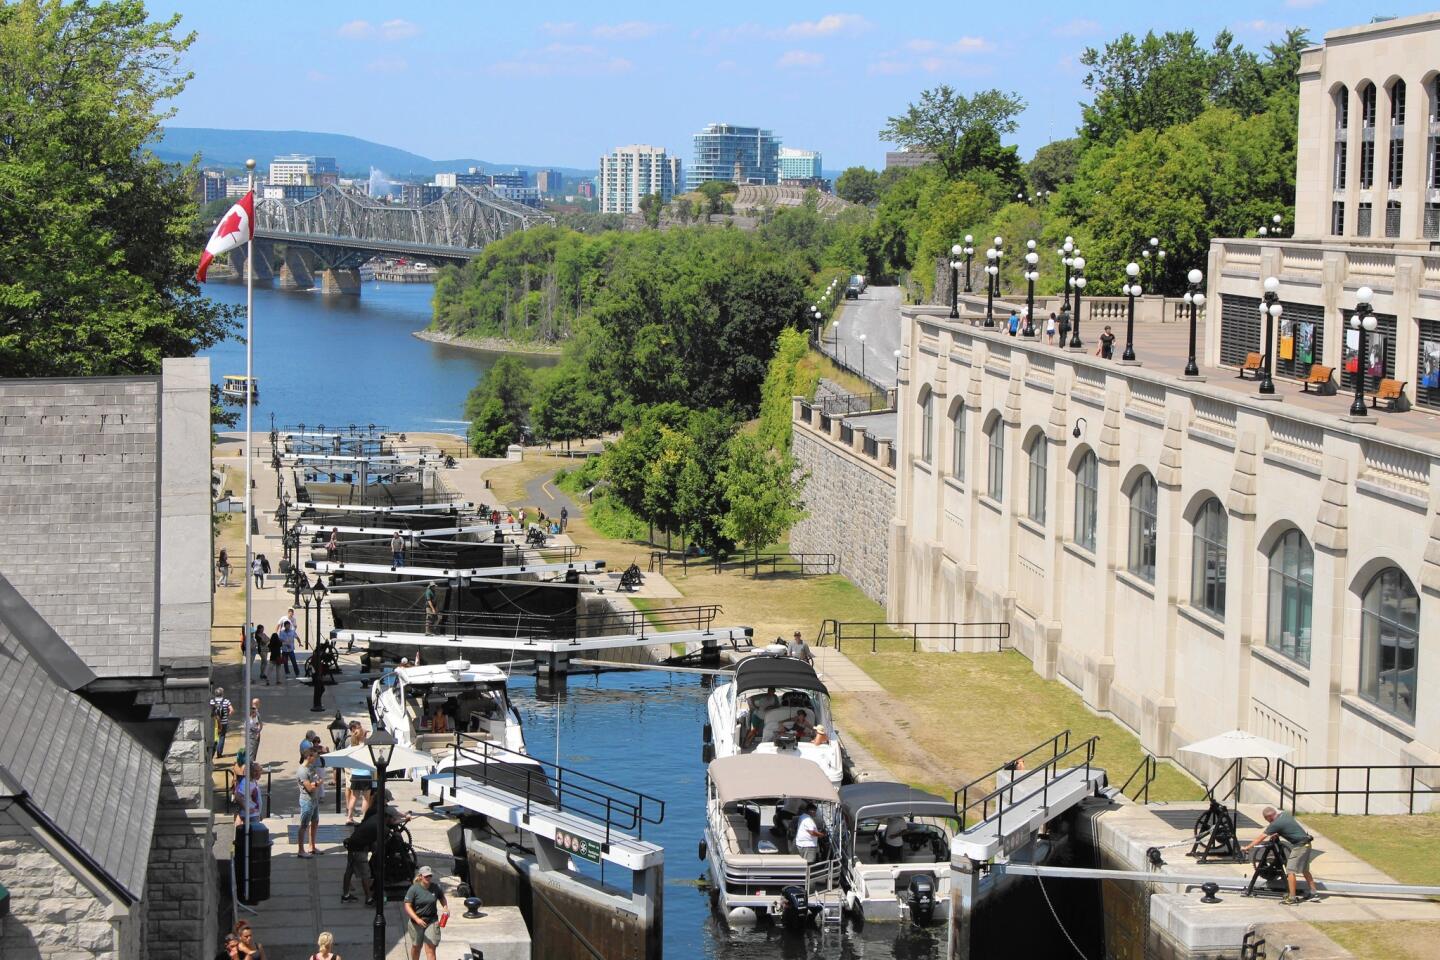 The Ottawa Locks